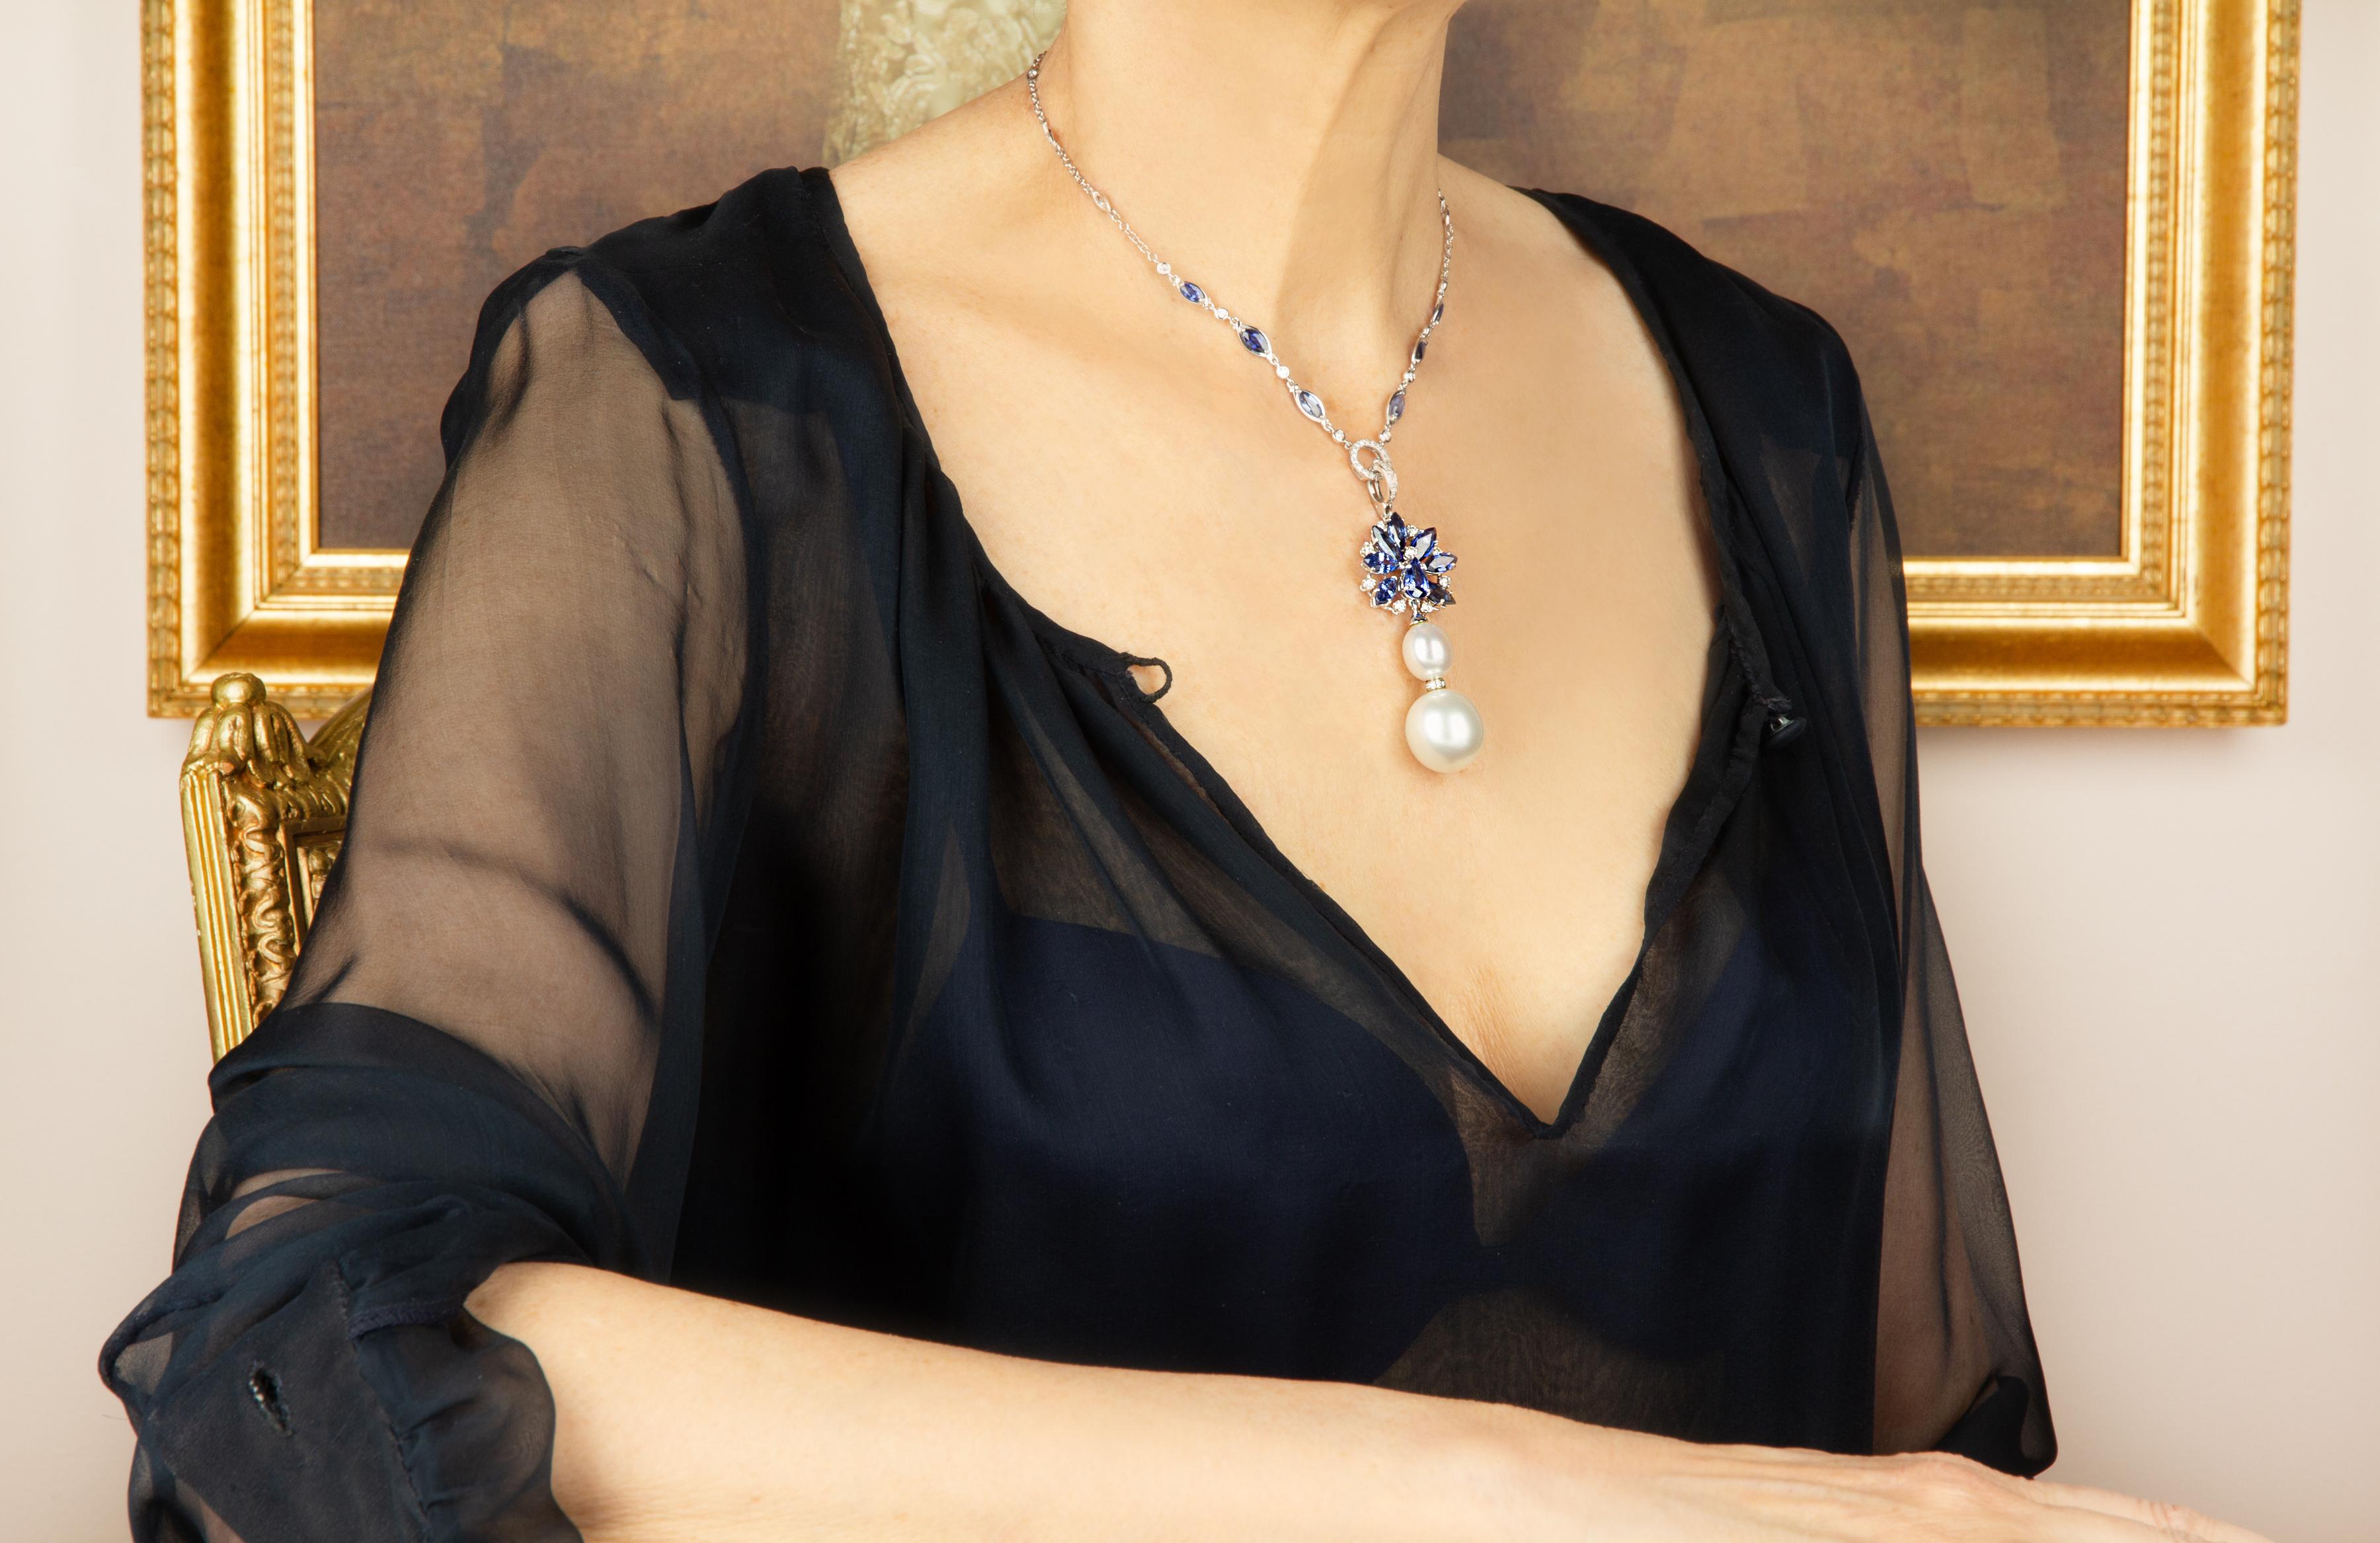 Le pendentif en saphir bleu présente une gerbe de saphirs de Ceylan facettés en forme de marquise, piquetés d'une couronne de diamants ronds. Le bijou suspend 2 splendides perles des mers du Sud, la plus grande étant de la taille très rare de 19 x